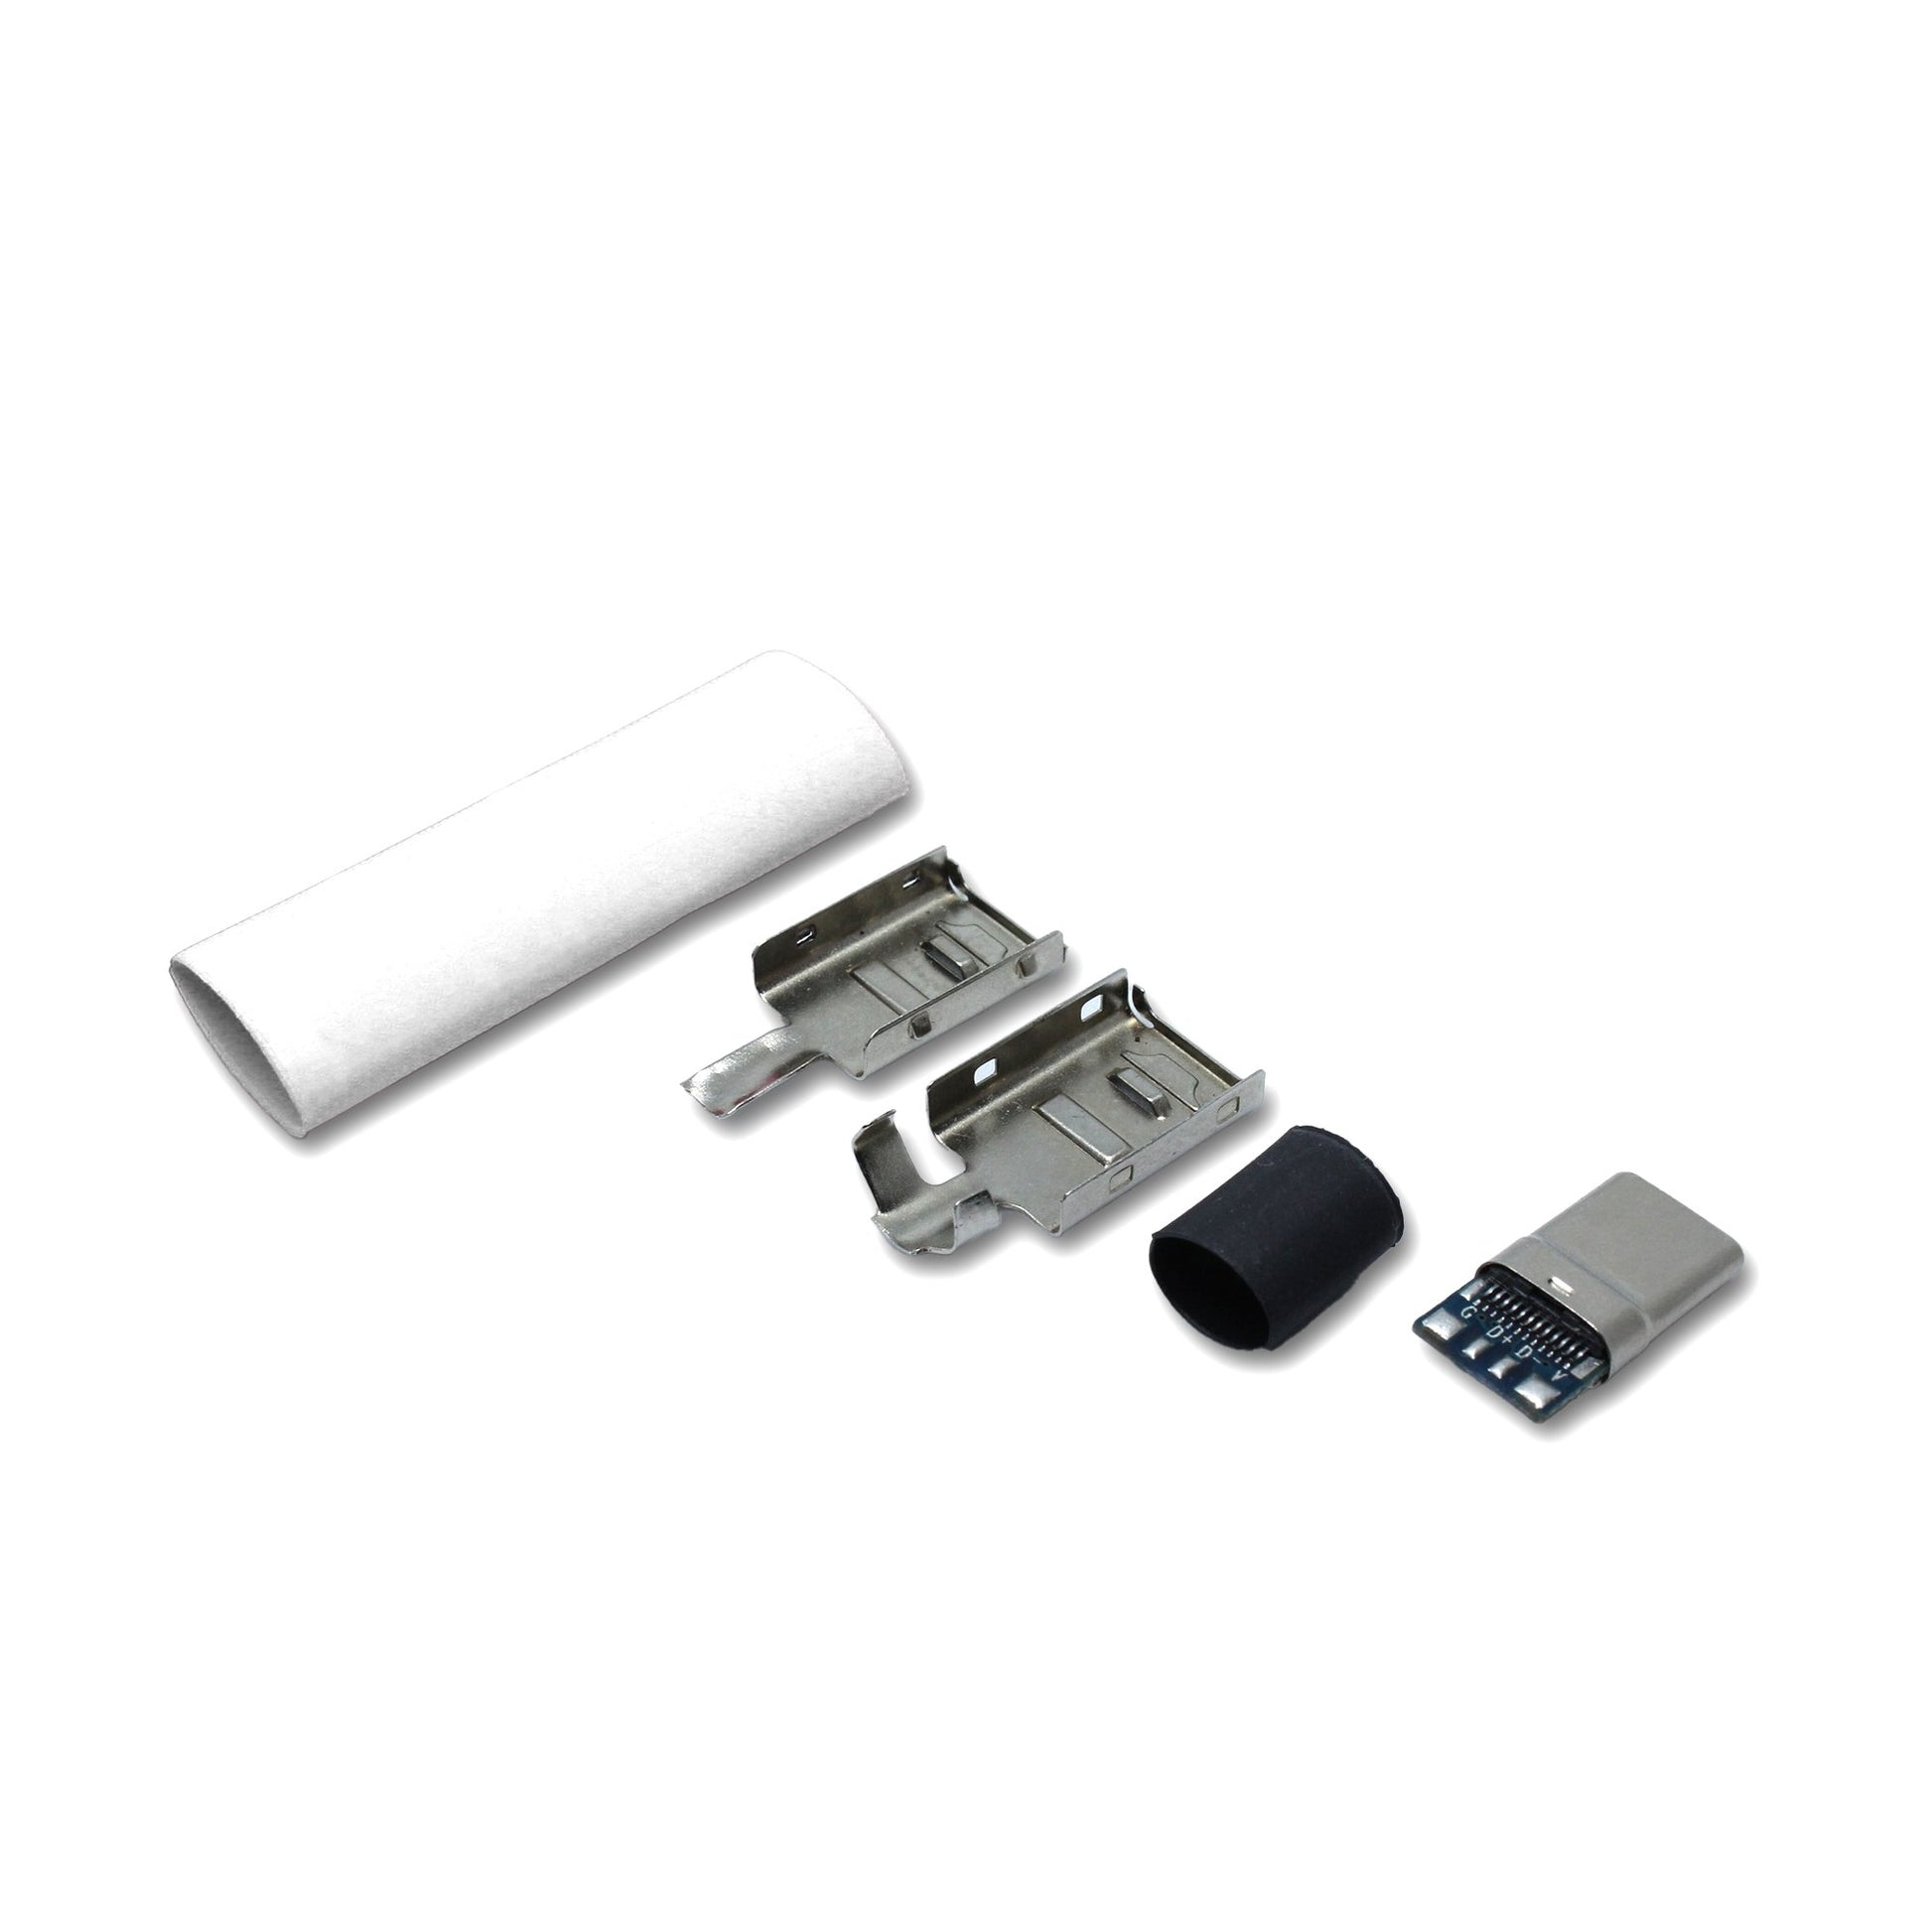 EIn recable USB C Host Stecker Set mit Schrumpfschlauch in weiss